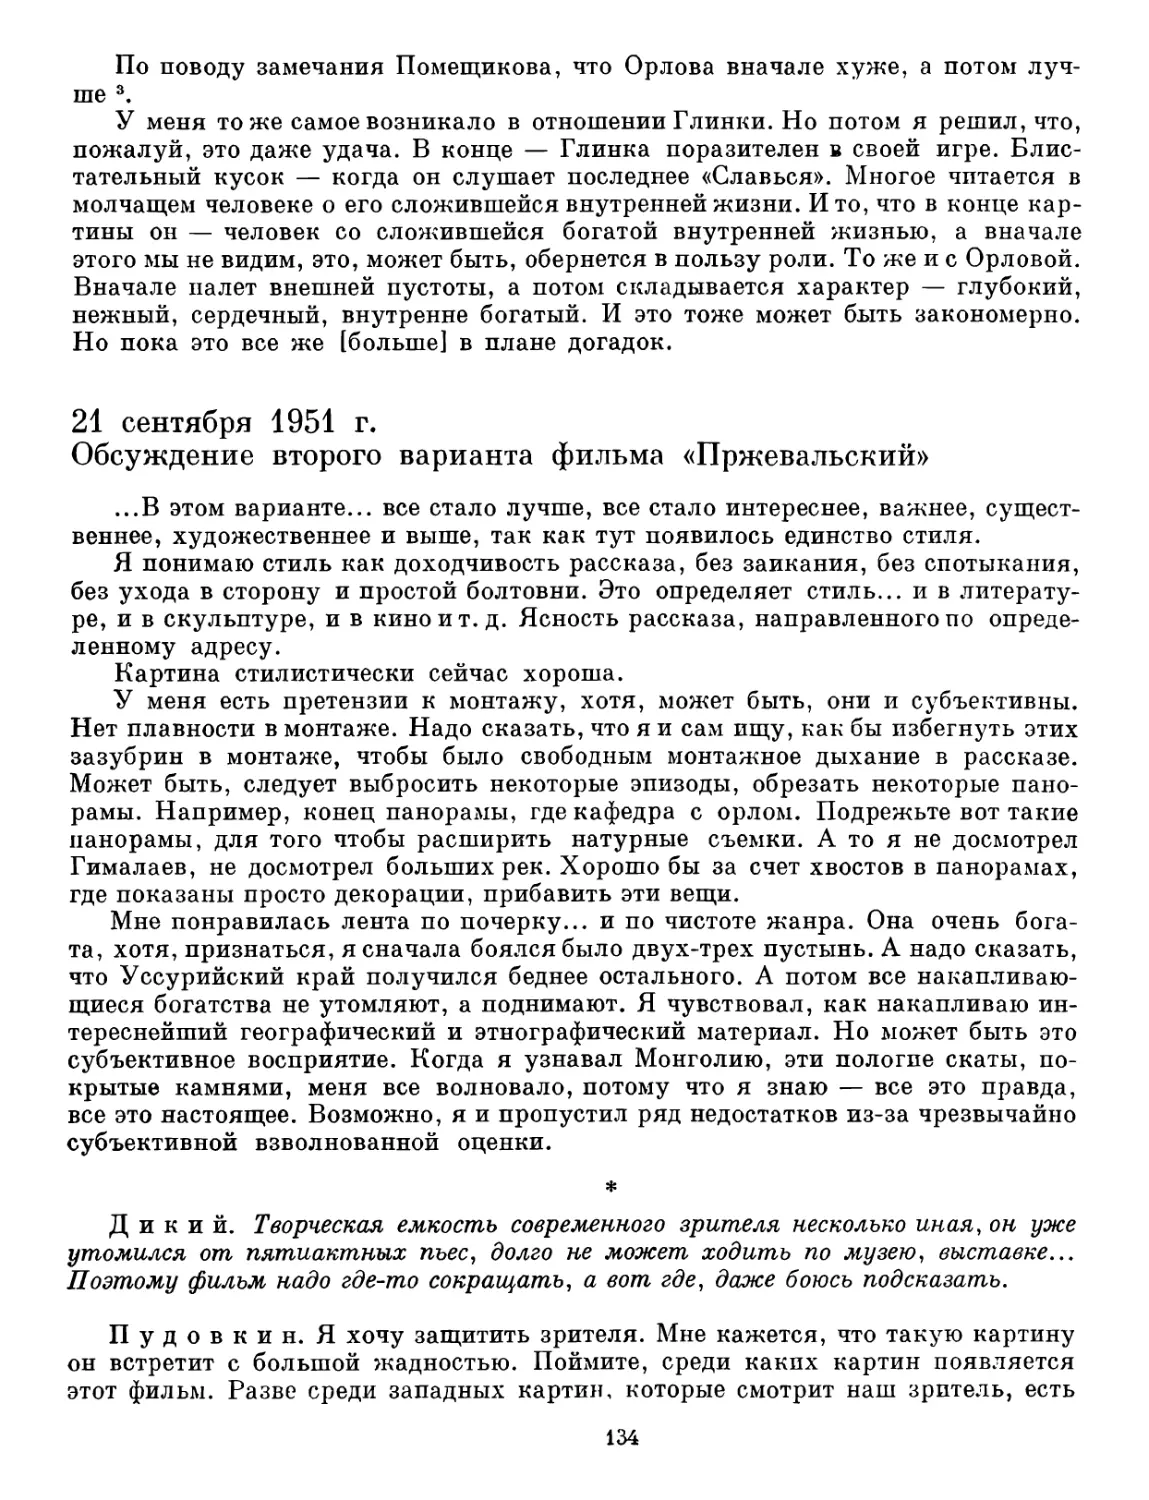 21 сентября 1951 г. Обсуждение второго варианта фильма «Пржевальский»